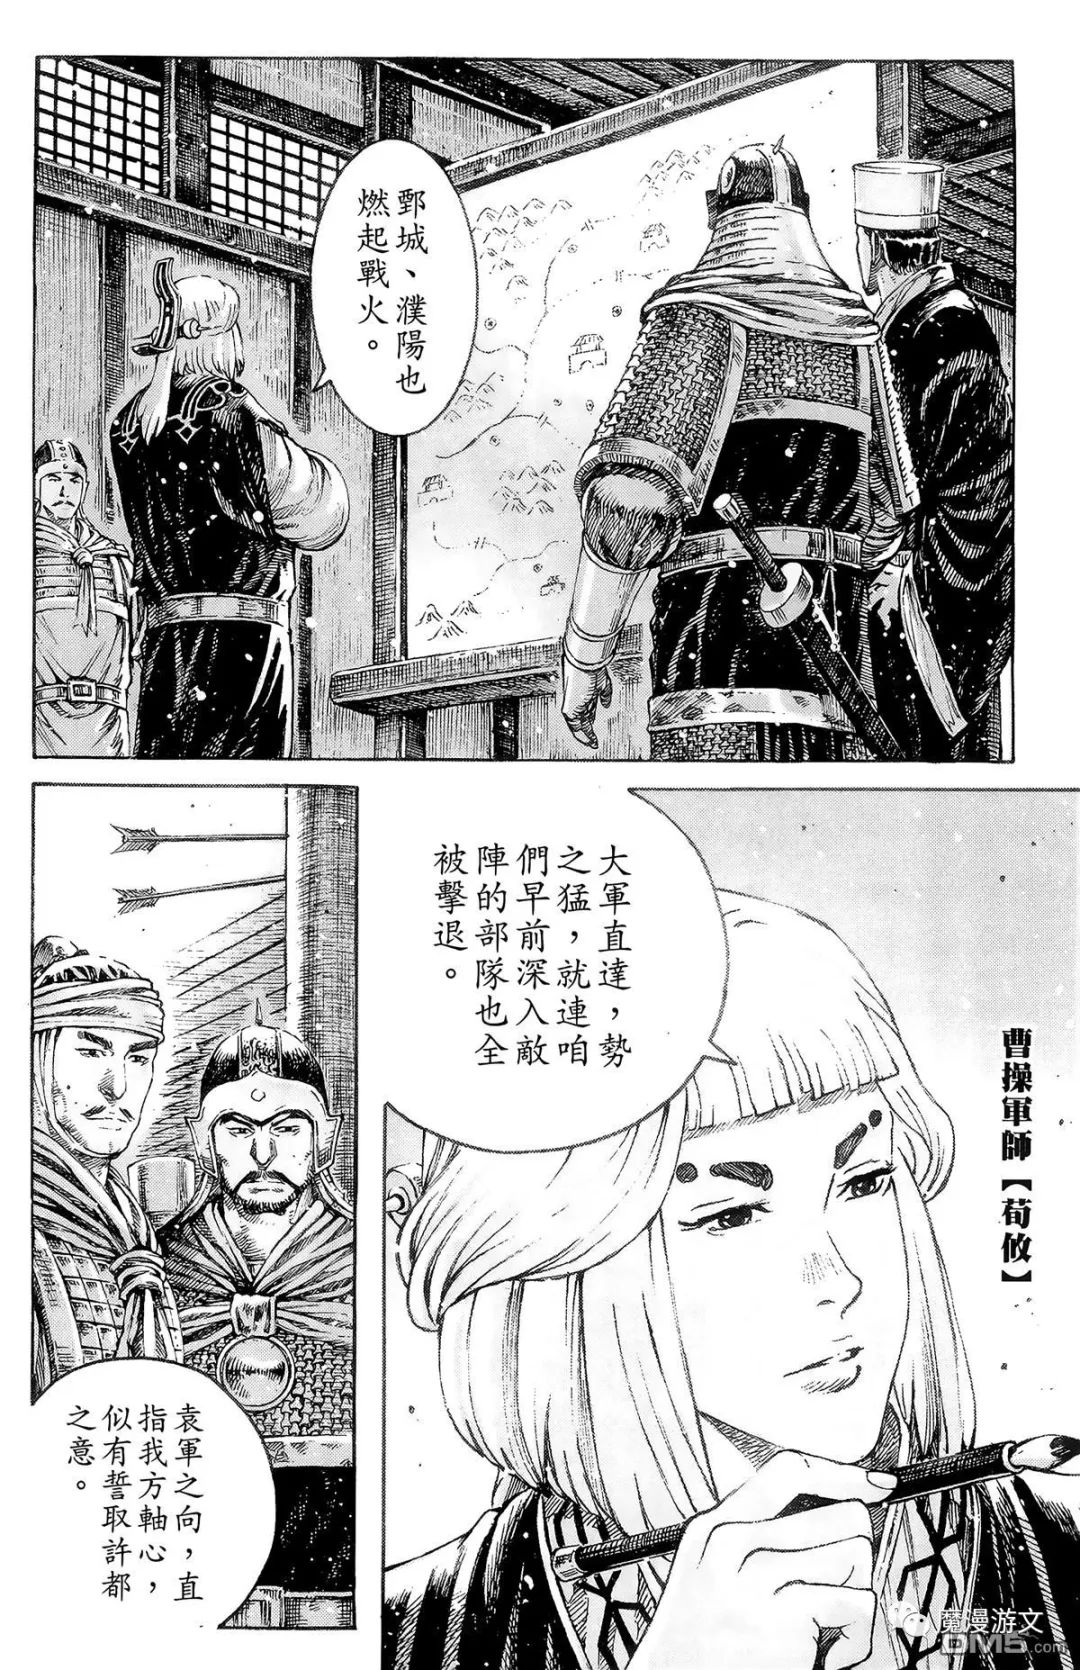 《火鳳燎原》第三十九卷 戲劇 第55張